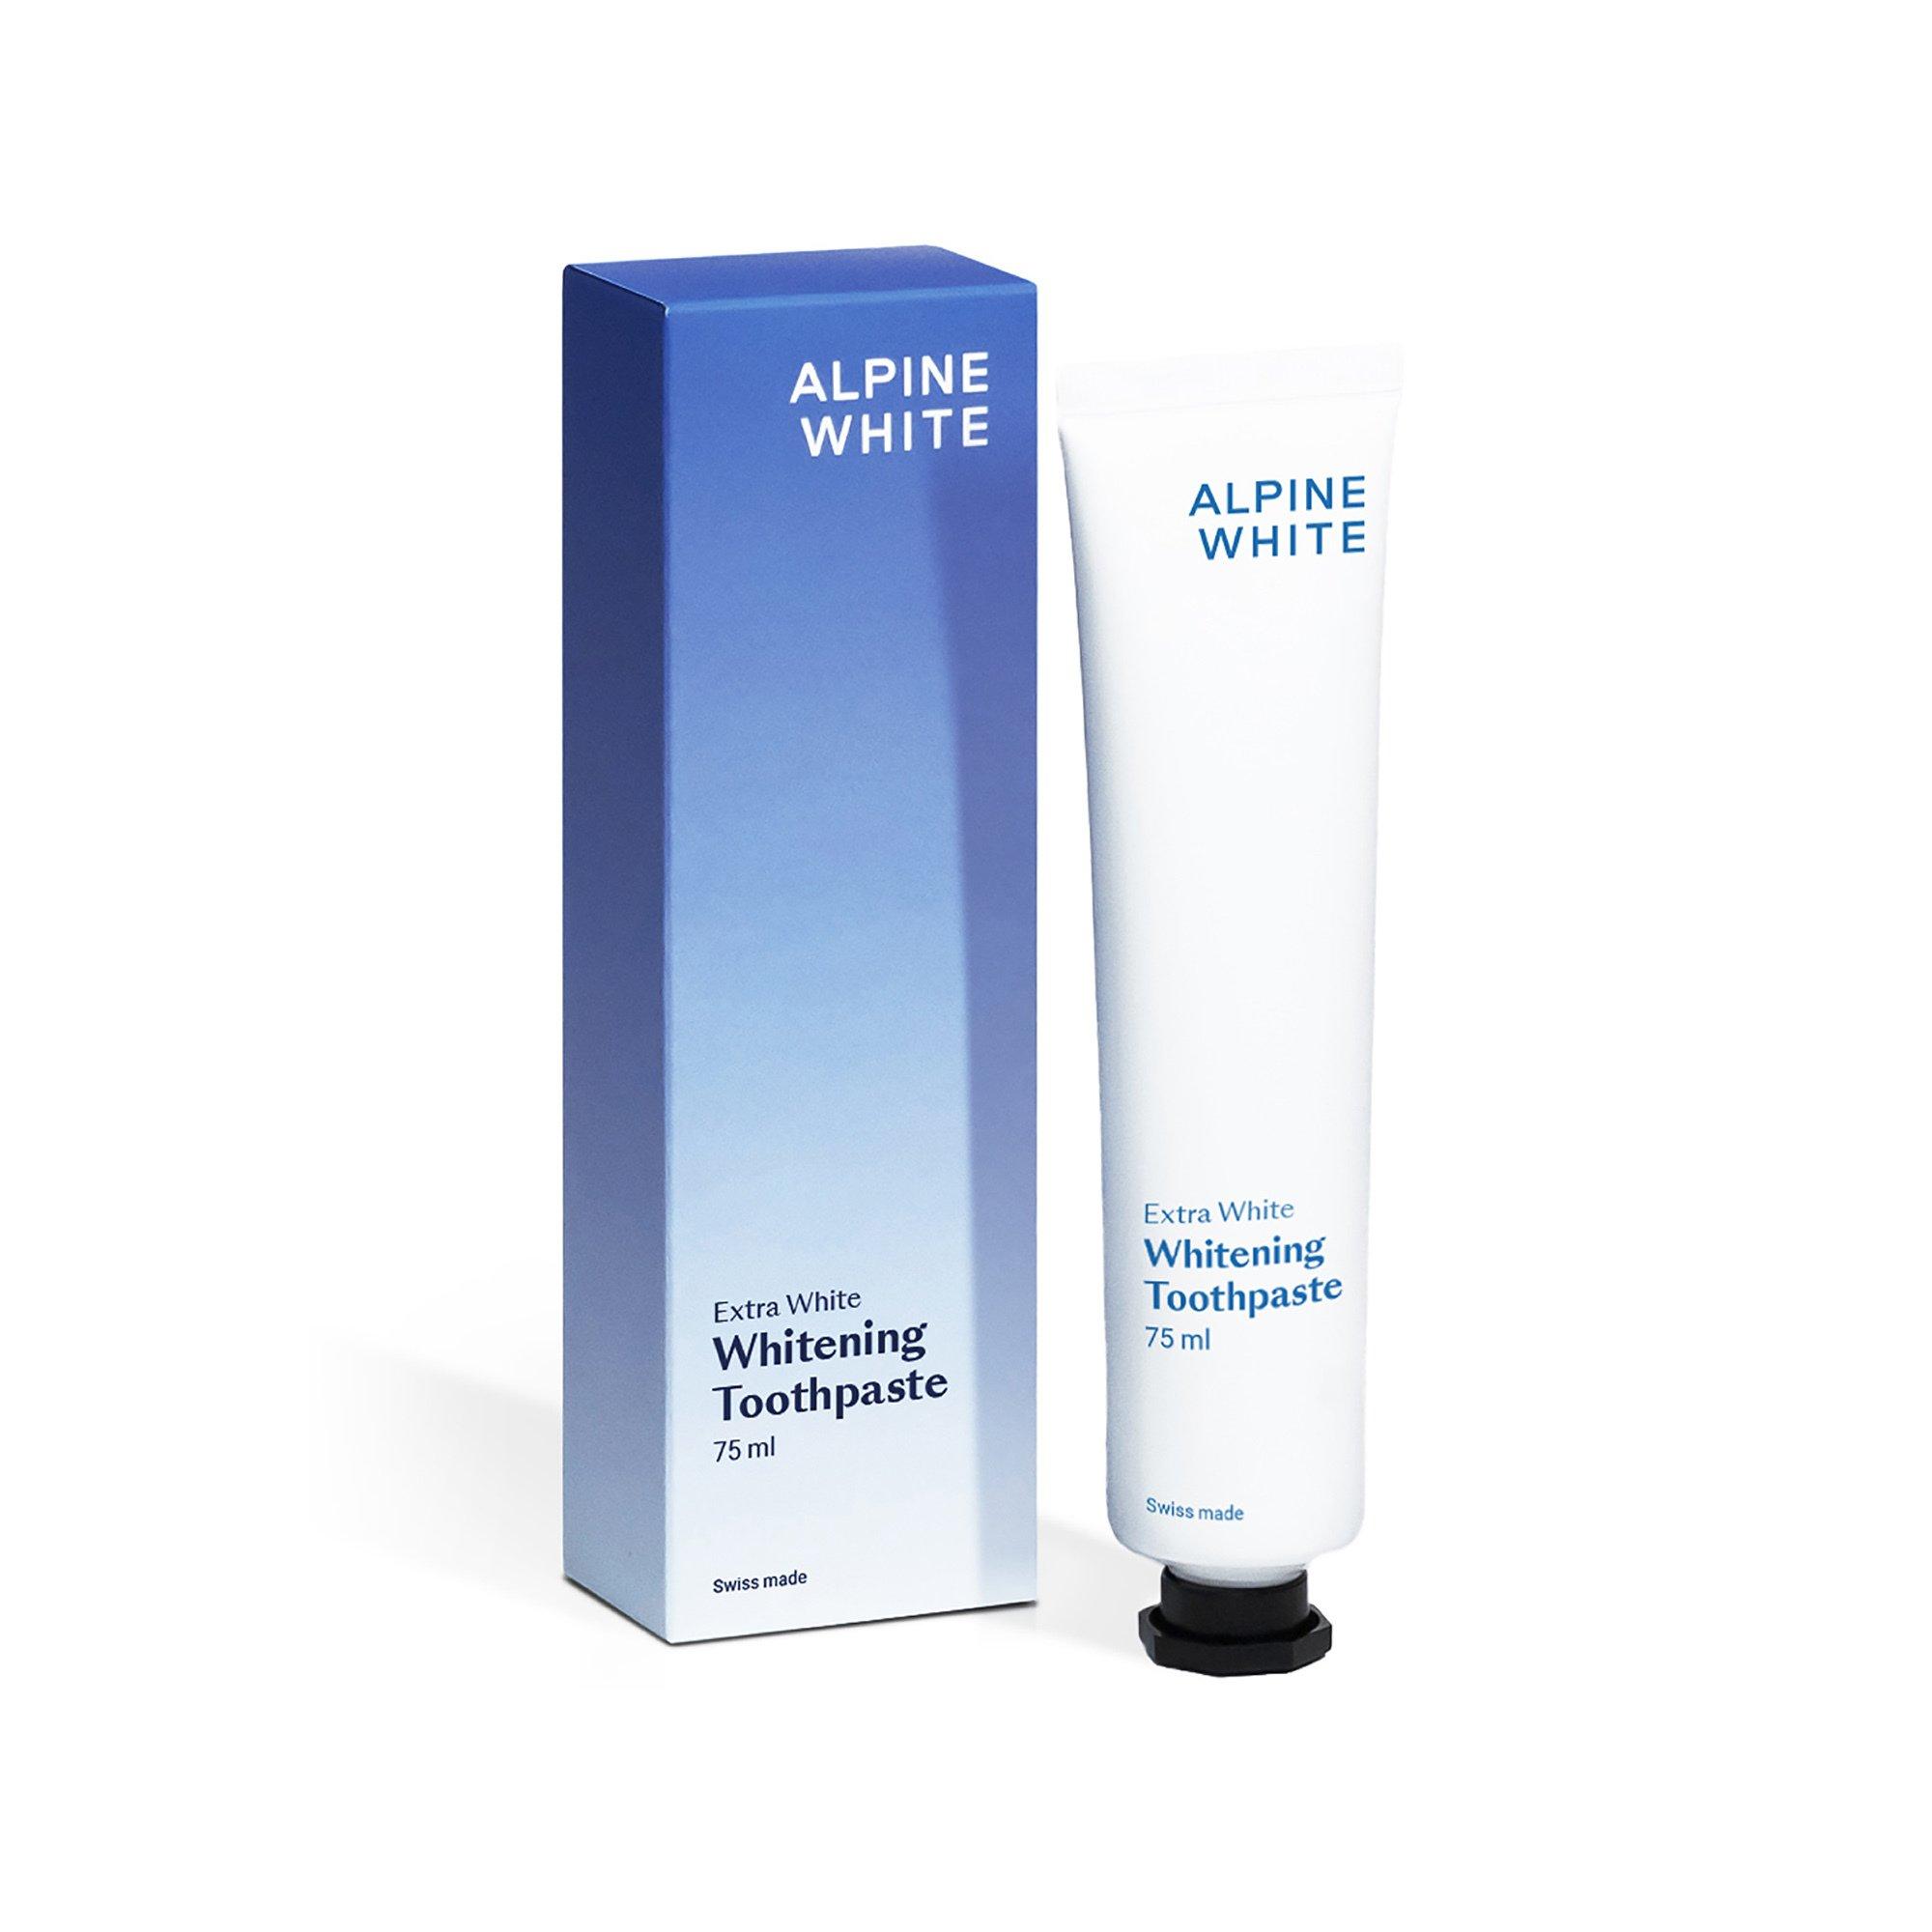 Image of ALPINE WHITE Whitening Toothpaste Extra White - 75ml